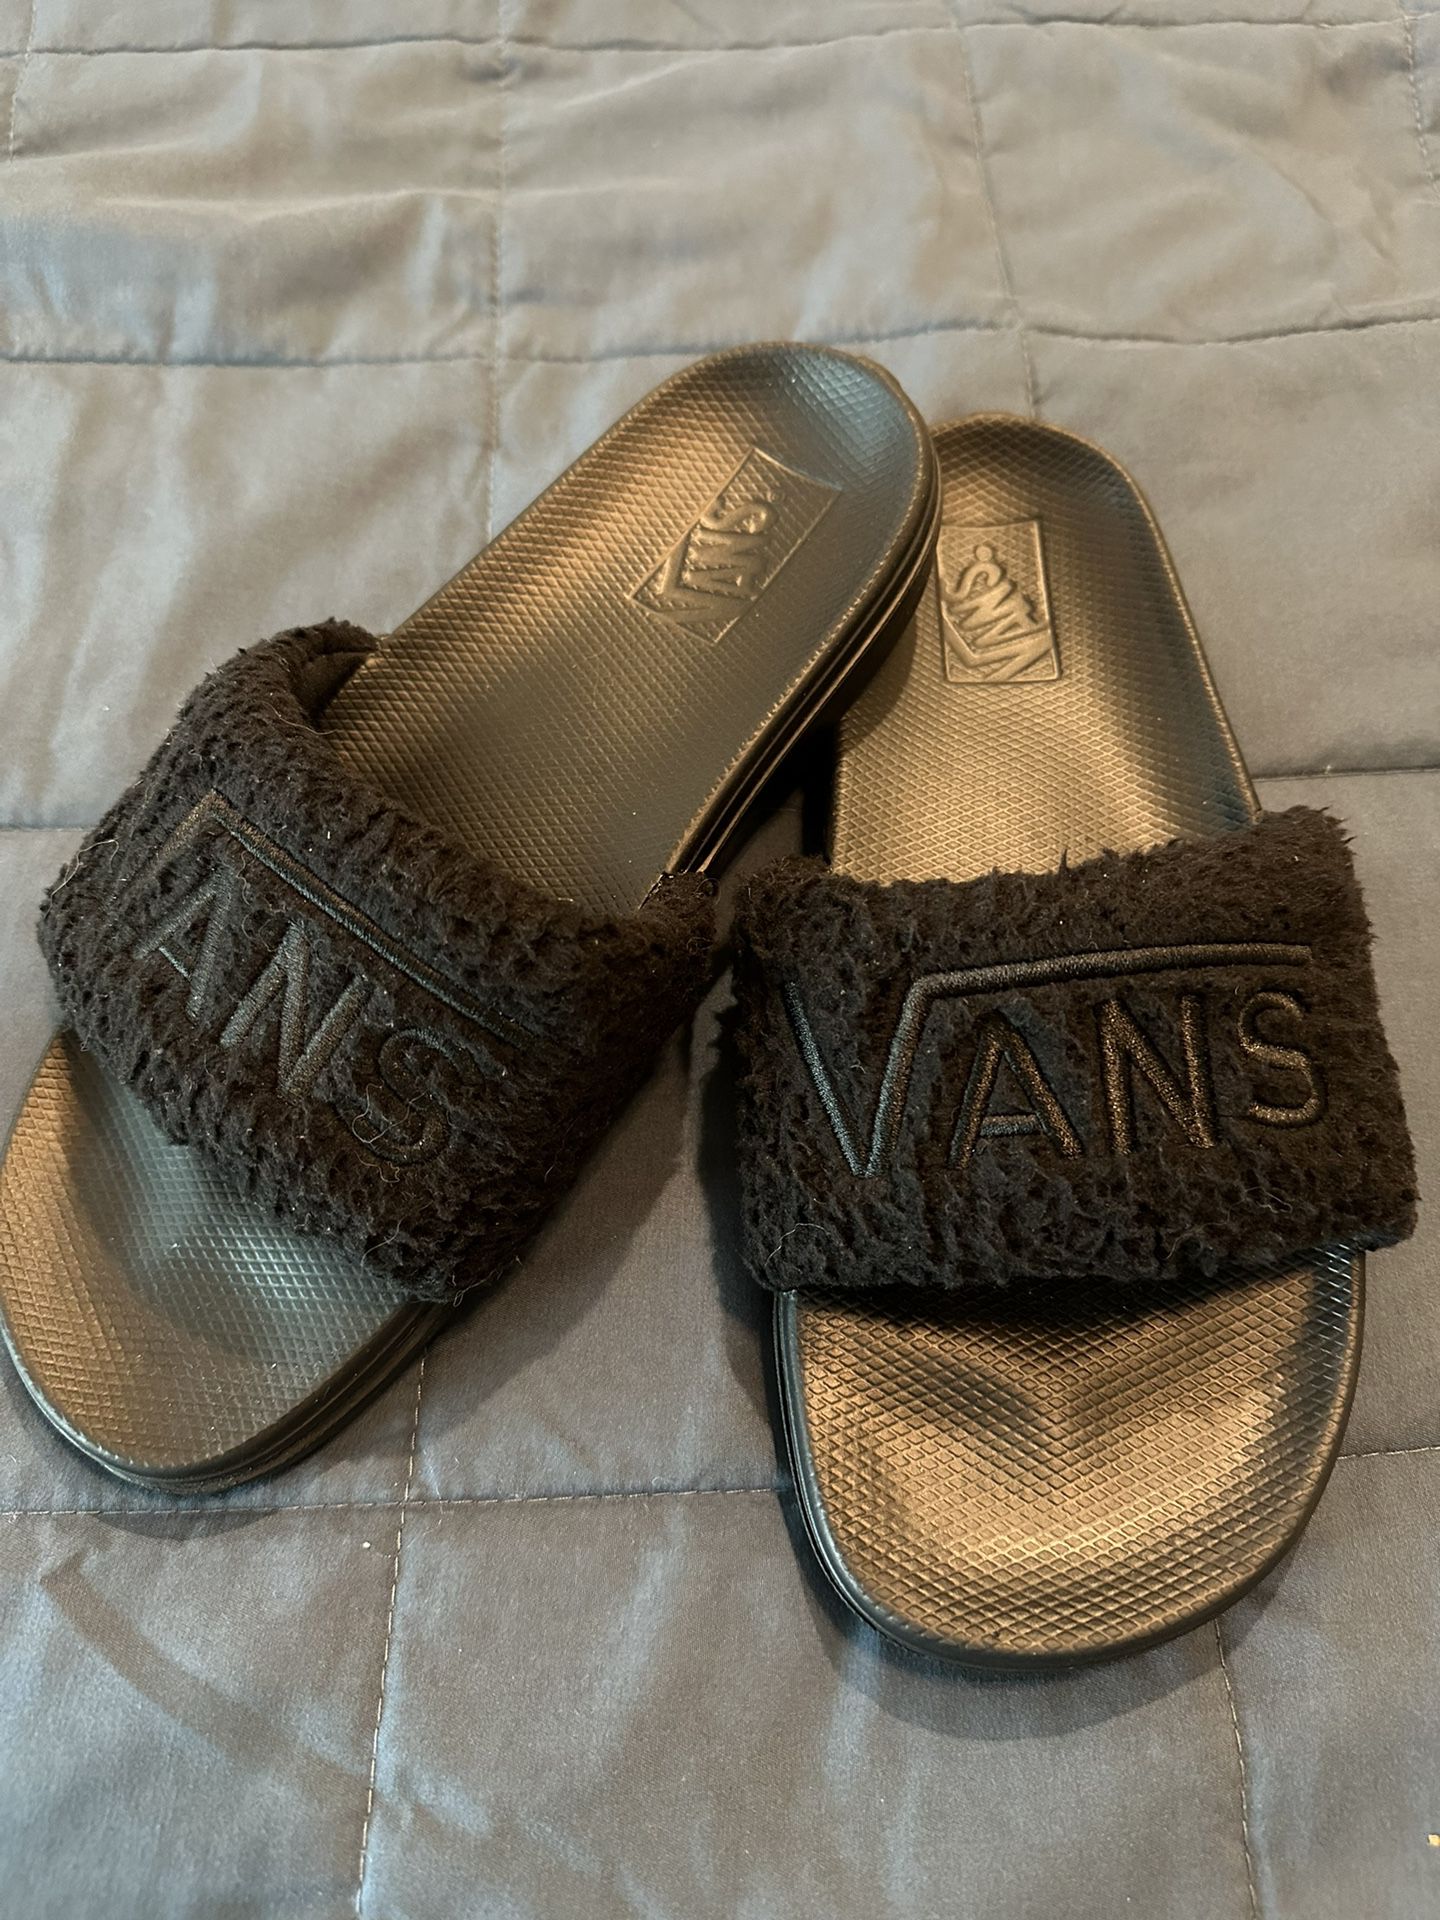 Women’s Vans Sandles size 9 (New)